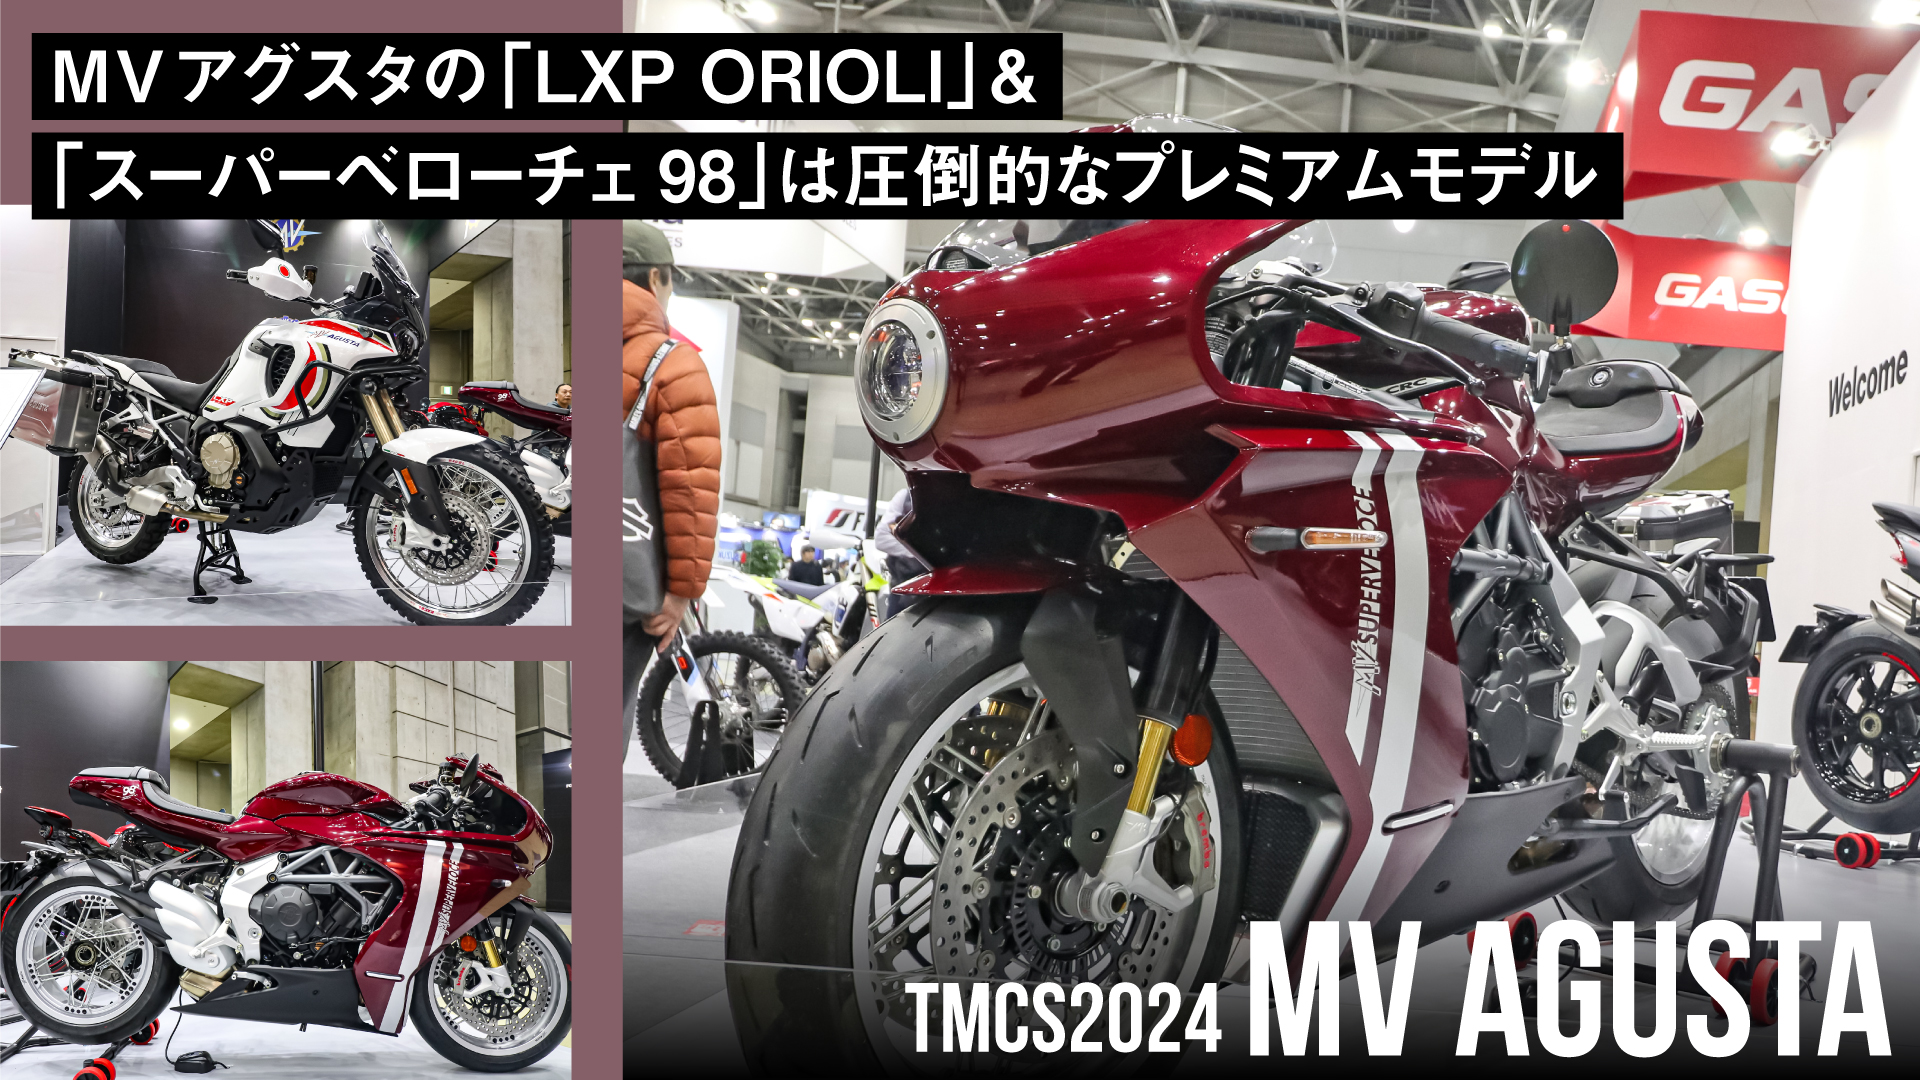 MVアグスタの「LXP ORIOLI」&「スーパーベローチェ98」は圧倒的なプレミアムモデル【東京モーターサイクルショー2024】